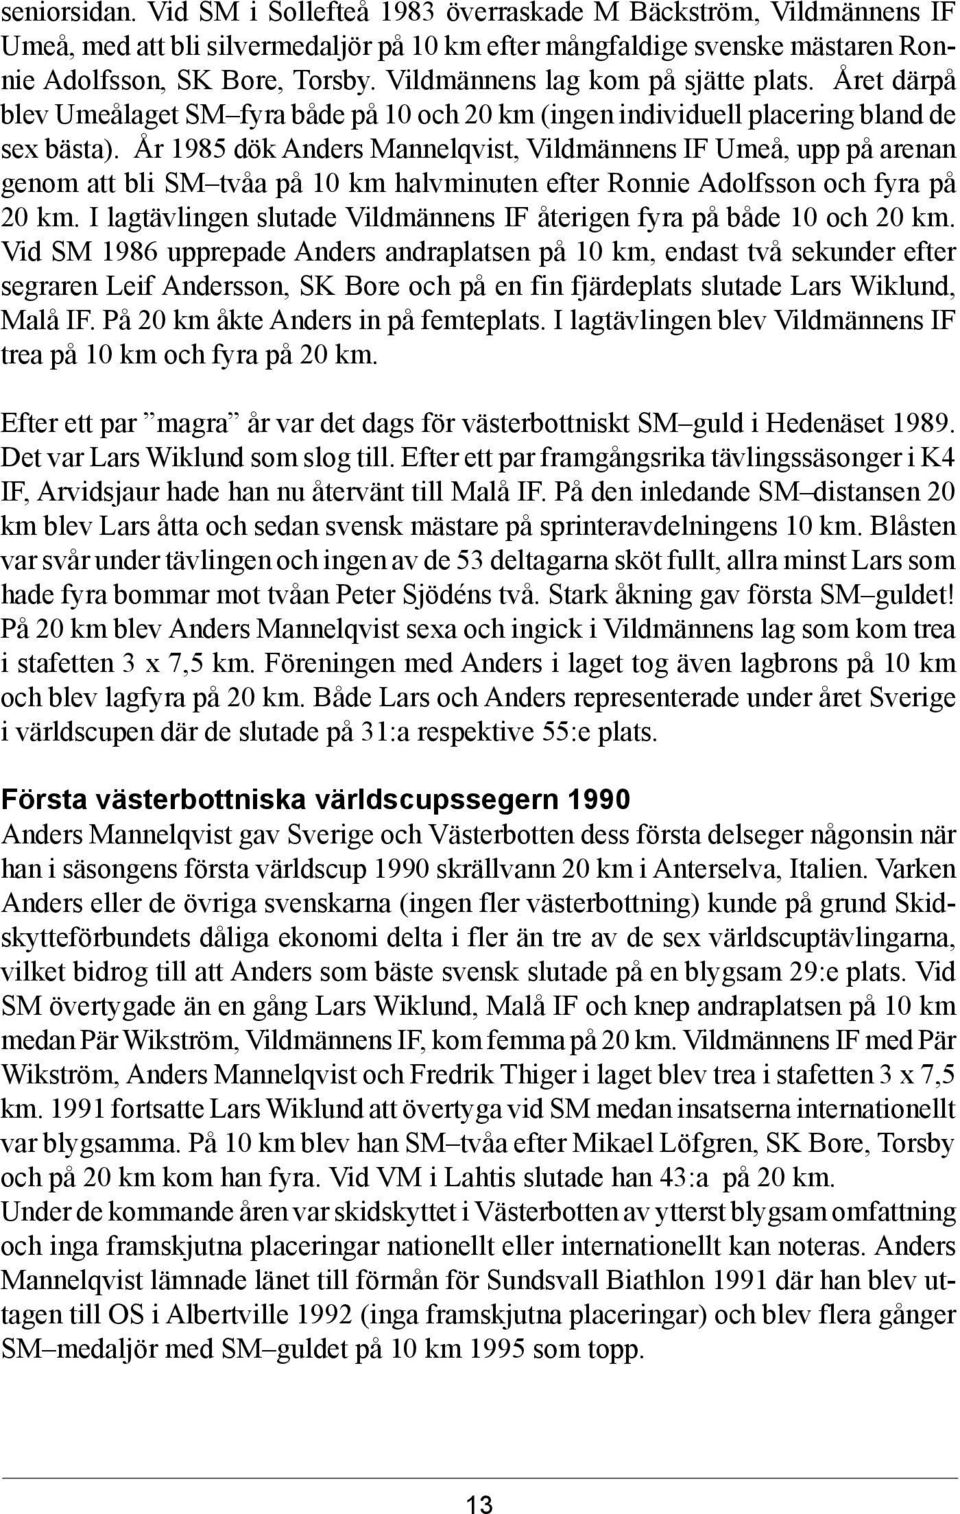 År 1985 dök Anders Mannelqvist, Vildmännens IF Umeå, upp på arenan genom att bli SM tvåa på 10 km halvminuten efter Ronnie Adolfsson och fyra på 20 km.